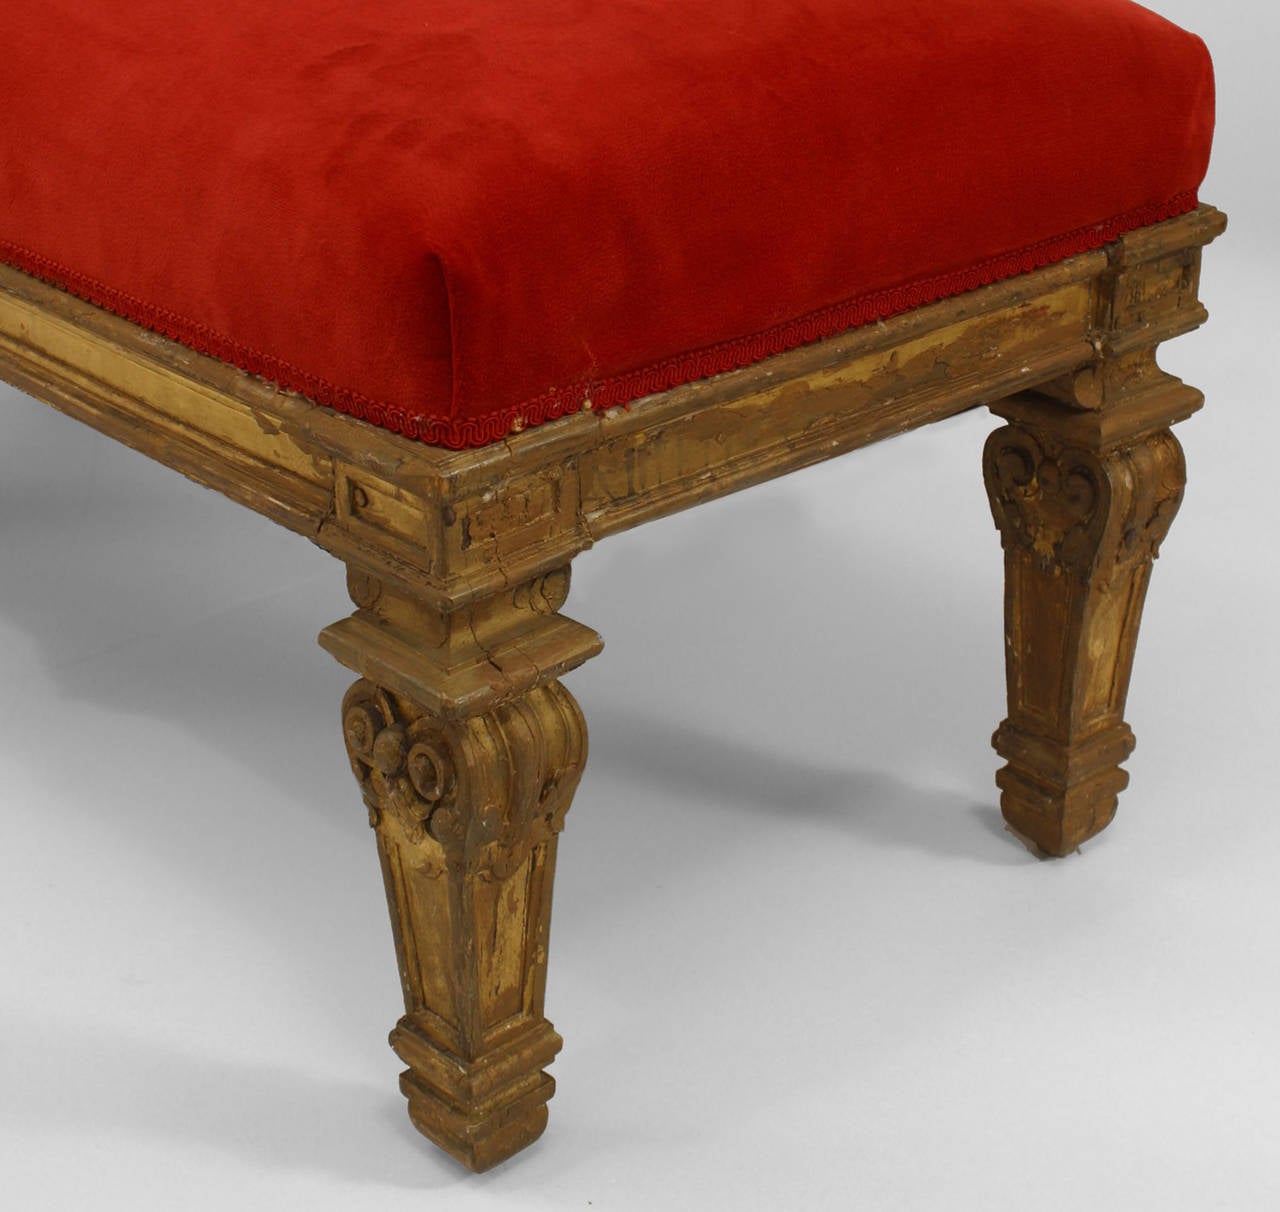 Paire de bancs en bois doré sculpté de style Louis XIV français du XIXe siècle, à six pieds.
Et un siège rembourré en velours rouge.